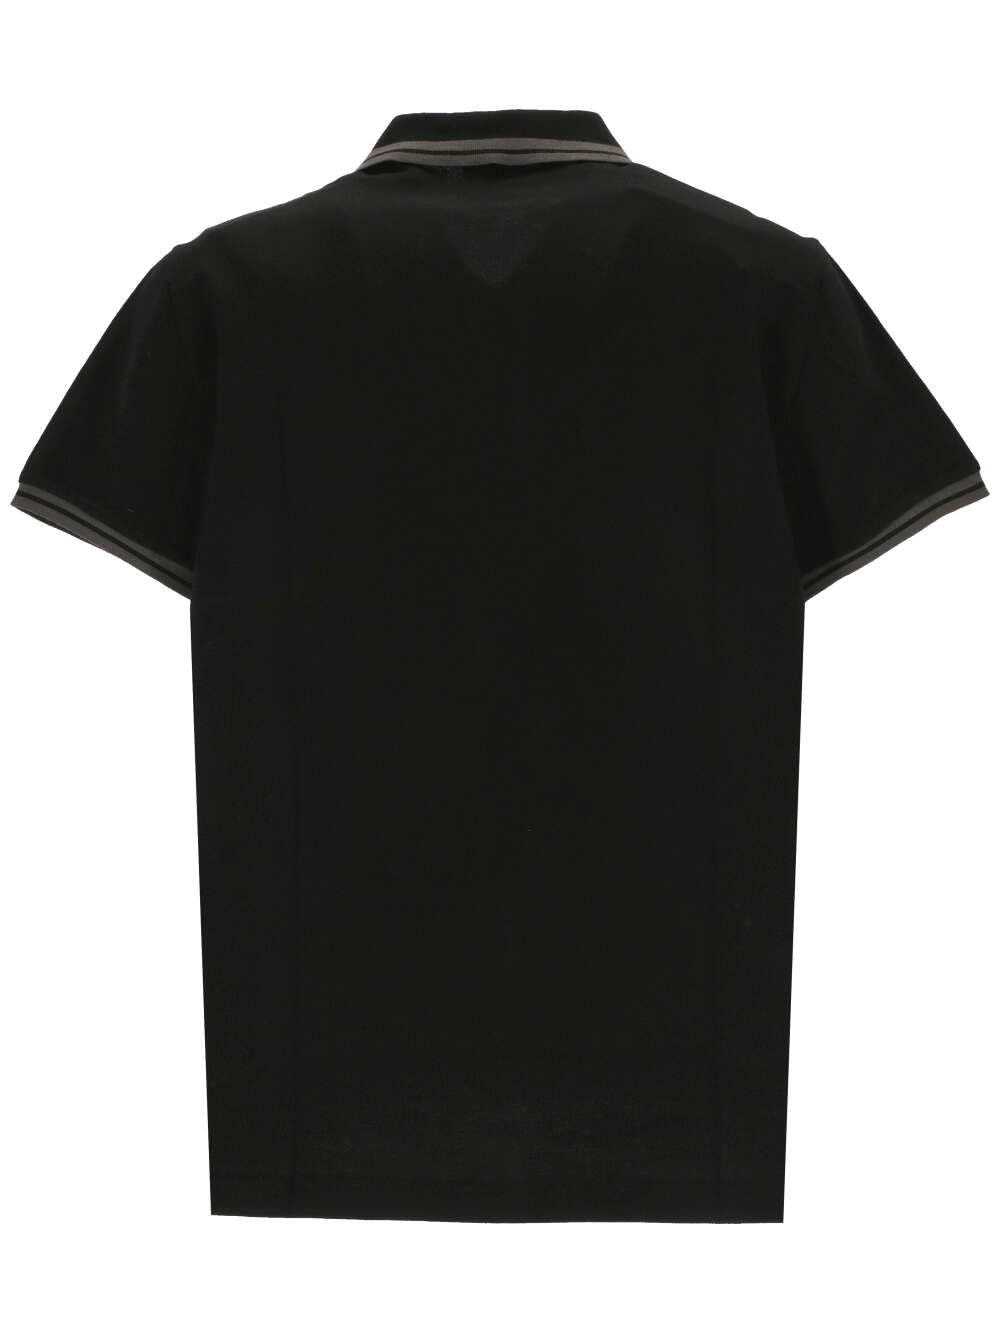 Black/grey cotton polo shirt